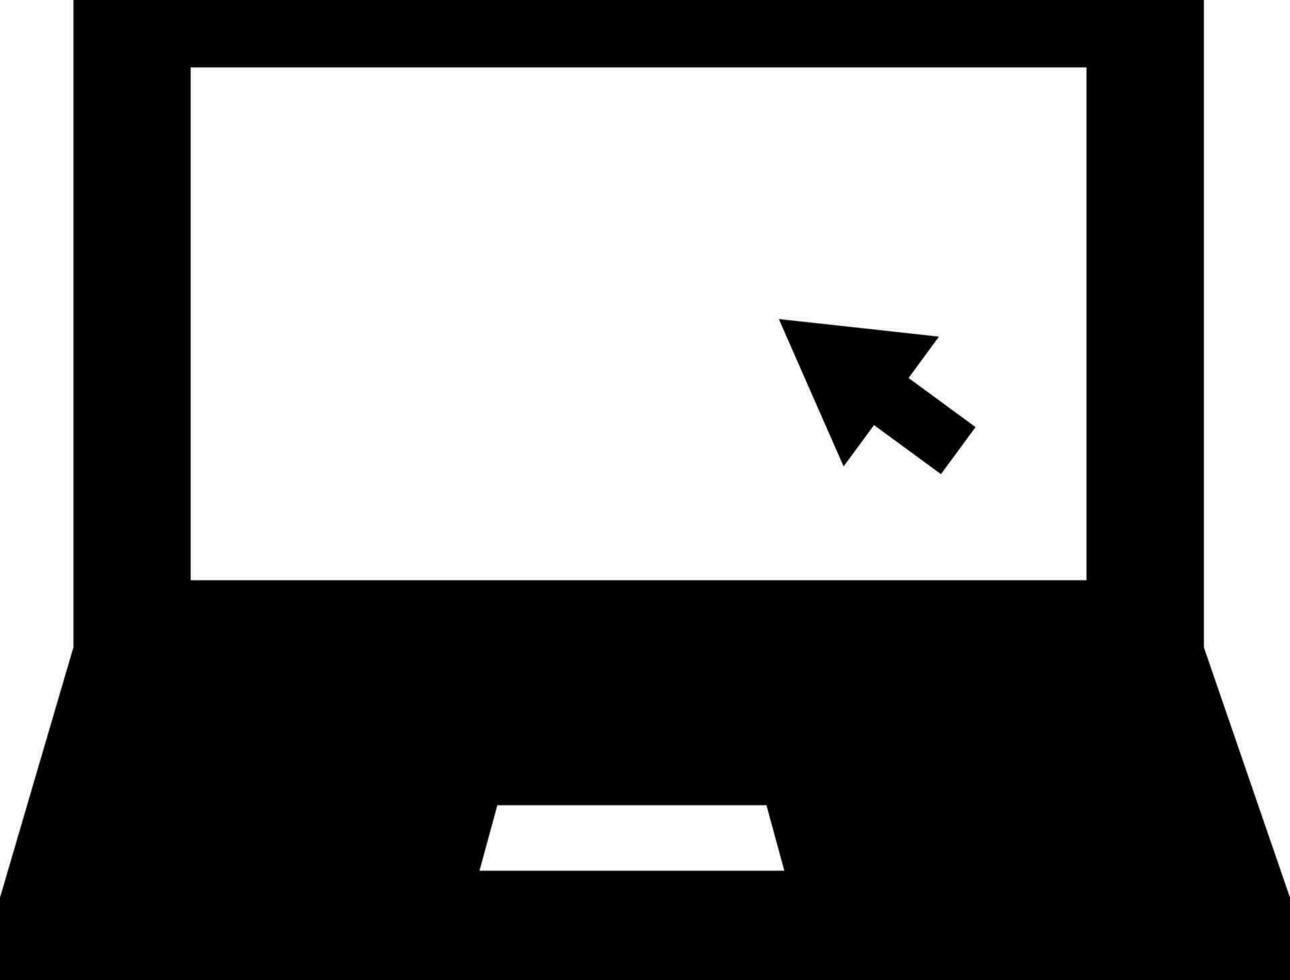 Cursor Arrow on Laptop Screen icon or symbol. vector